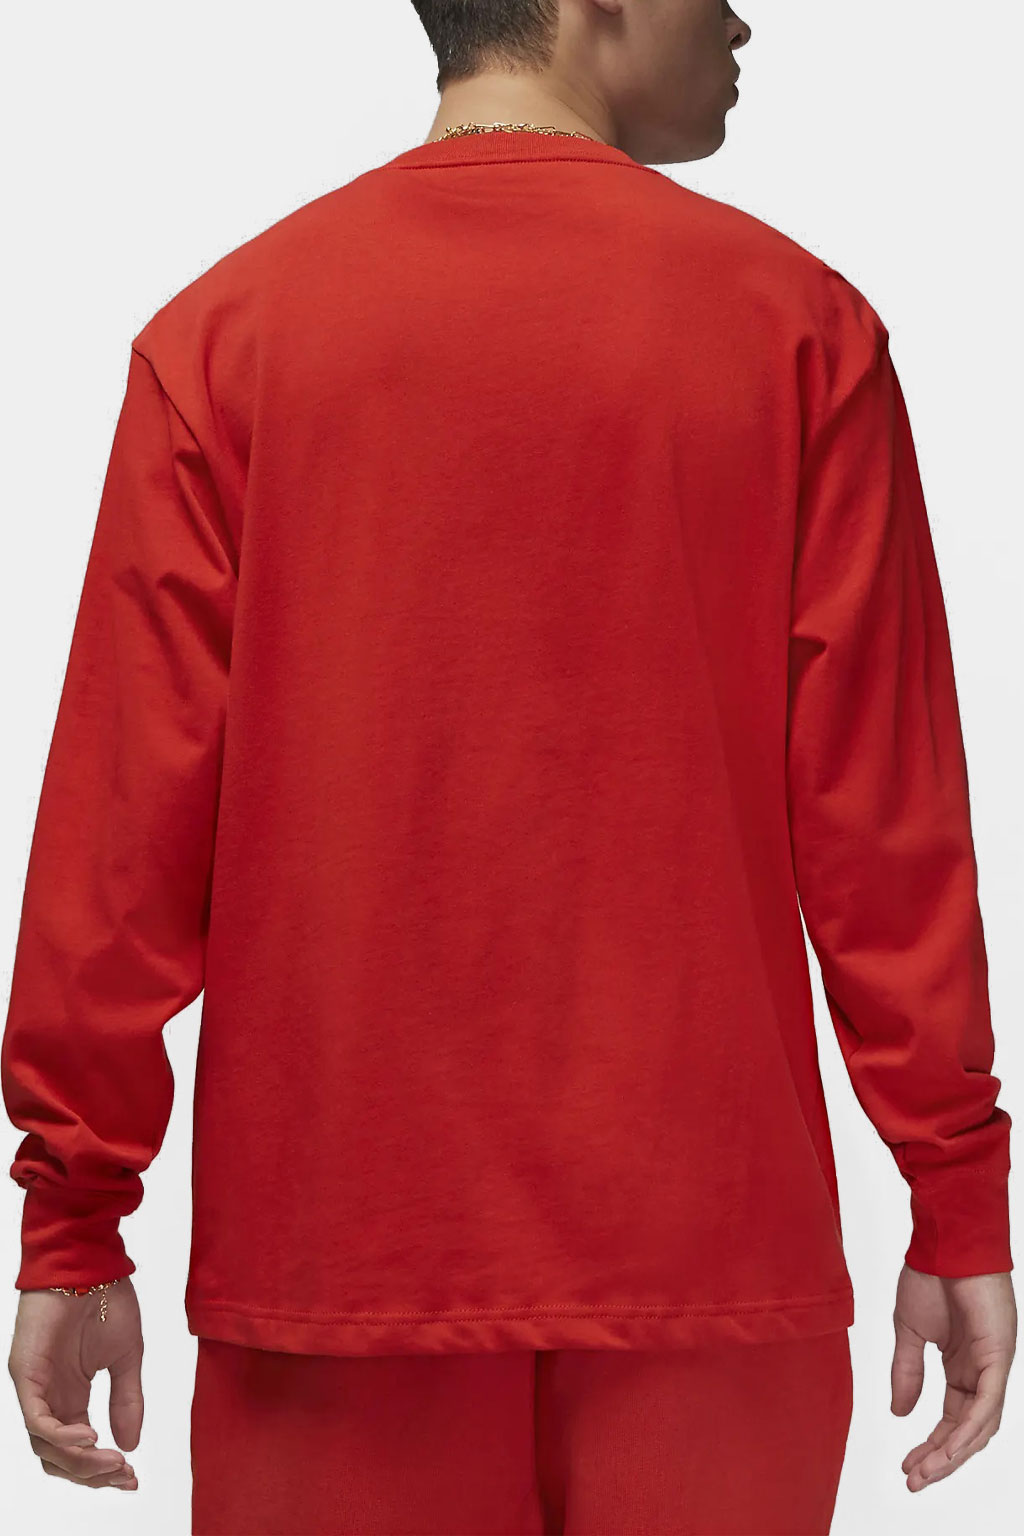 Nike Air Jordan - Wordmark Long Sleeve T-shirt